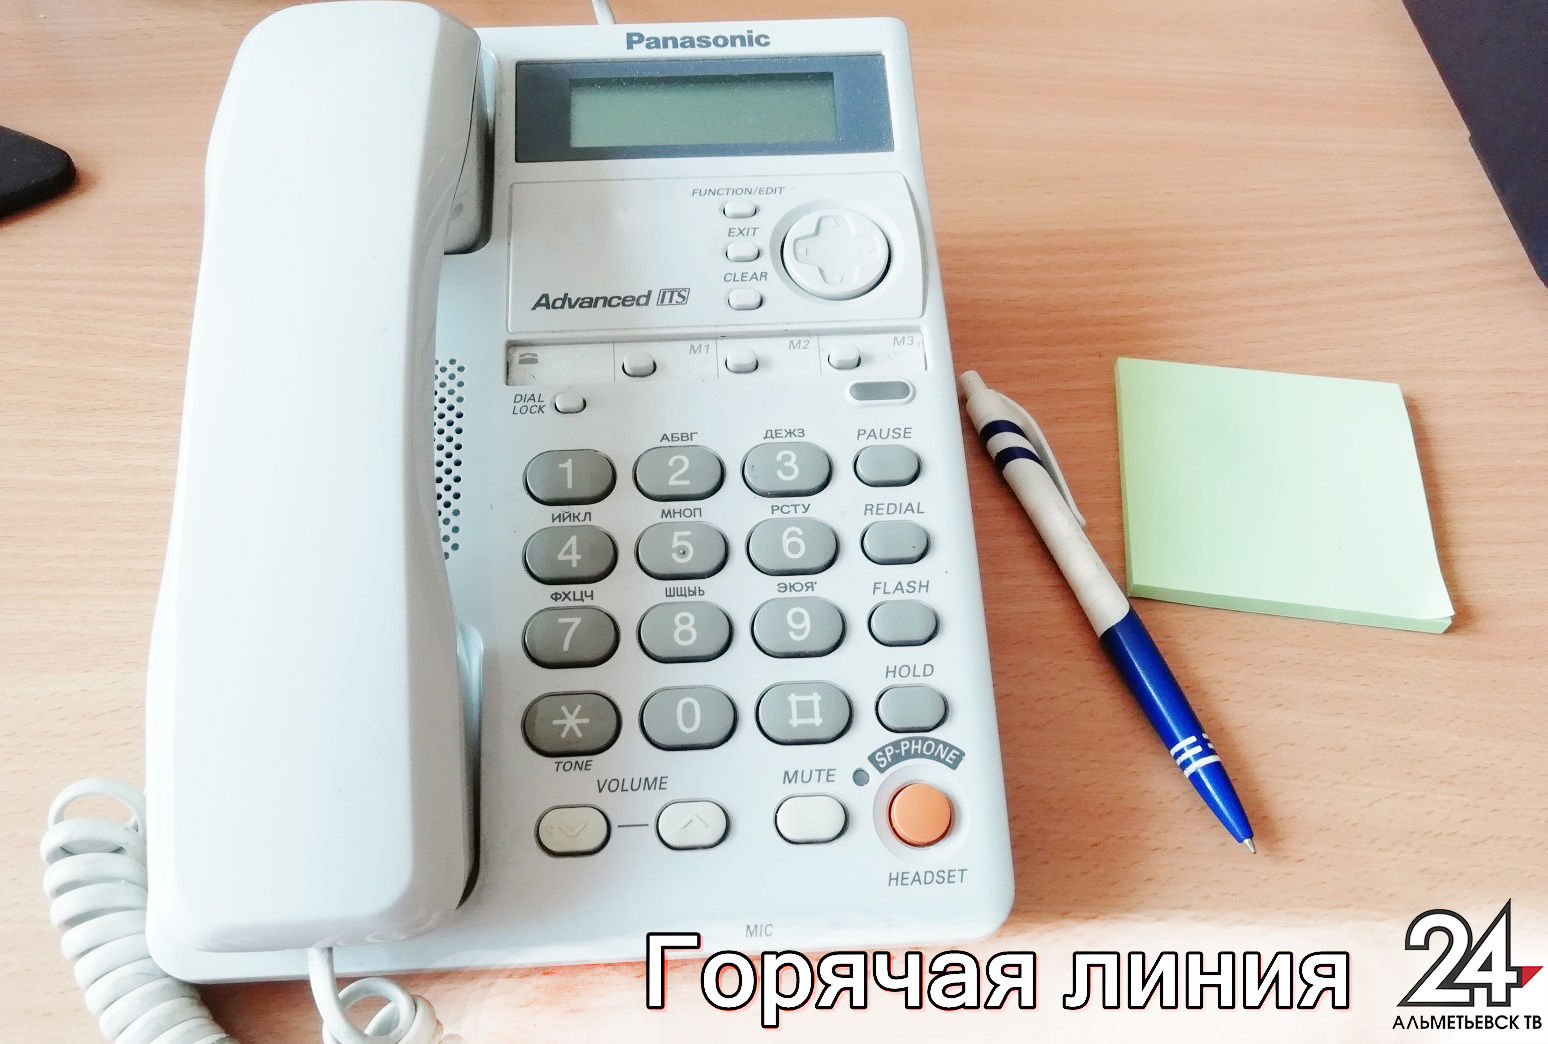 В Татарстане за два месяца на линию по вопросам Covid-19 поступило почти 60 тыс. звонков